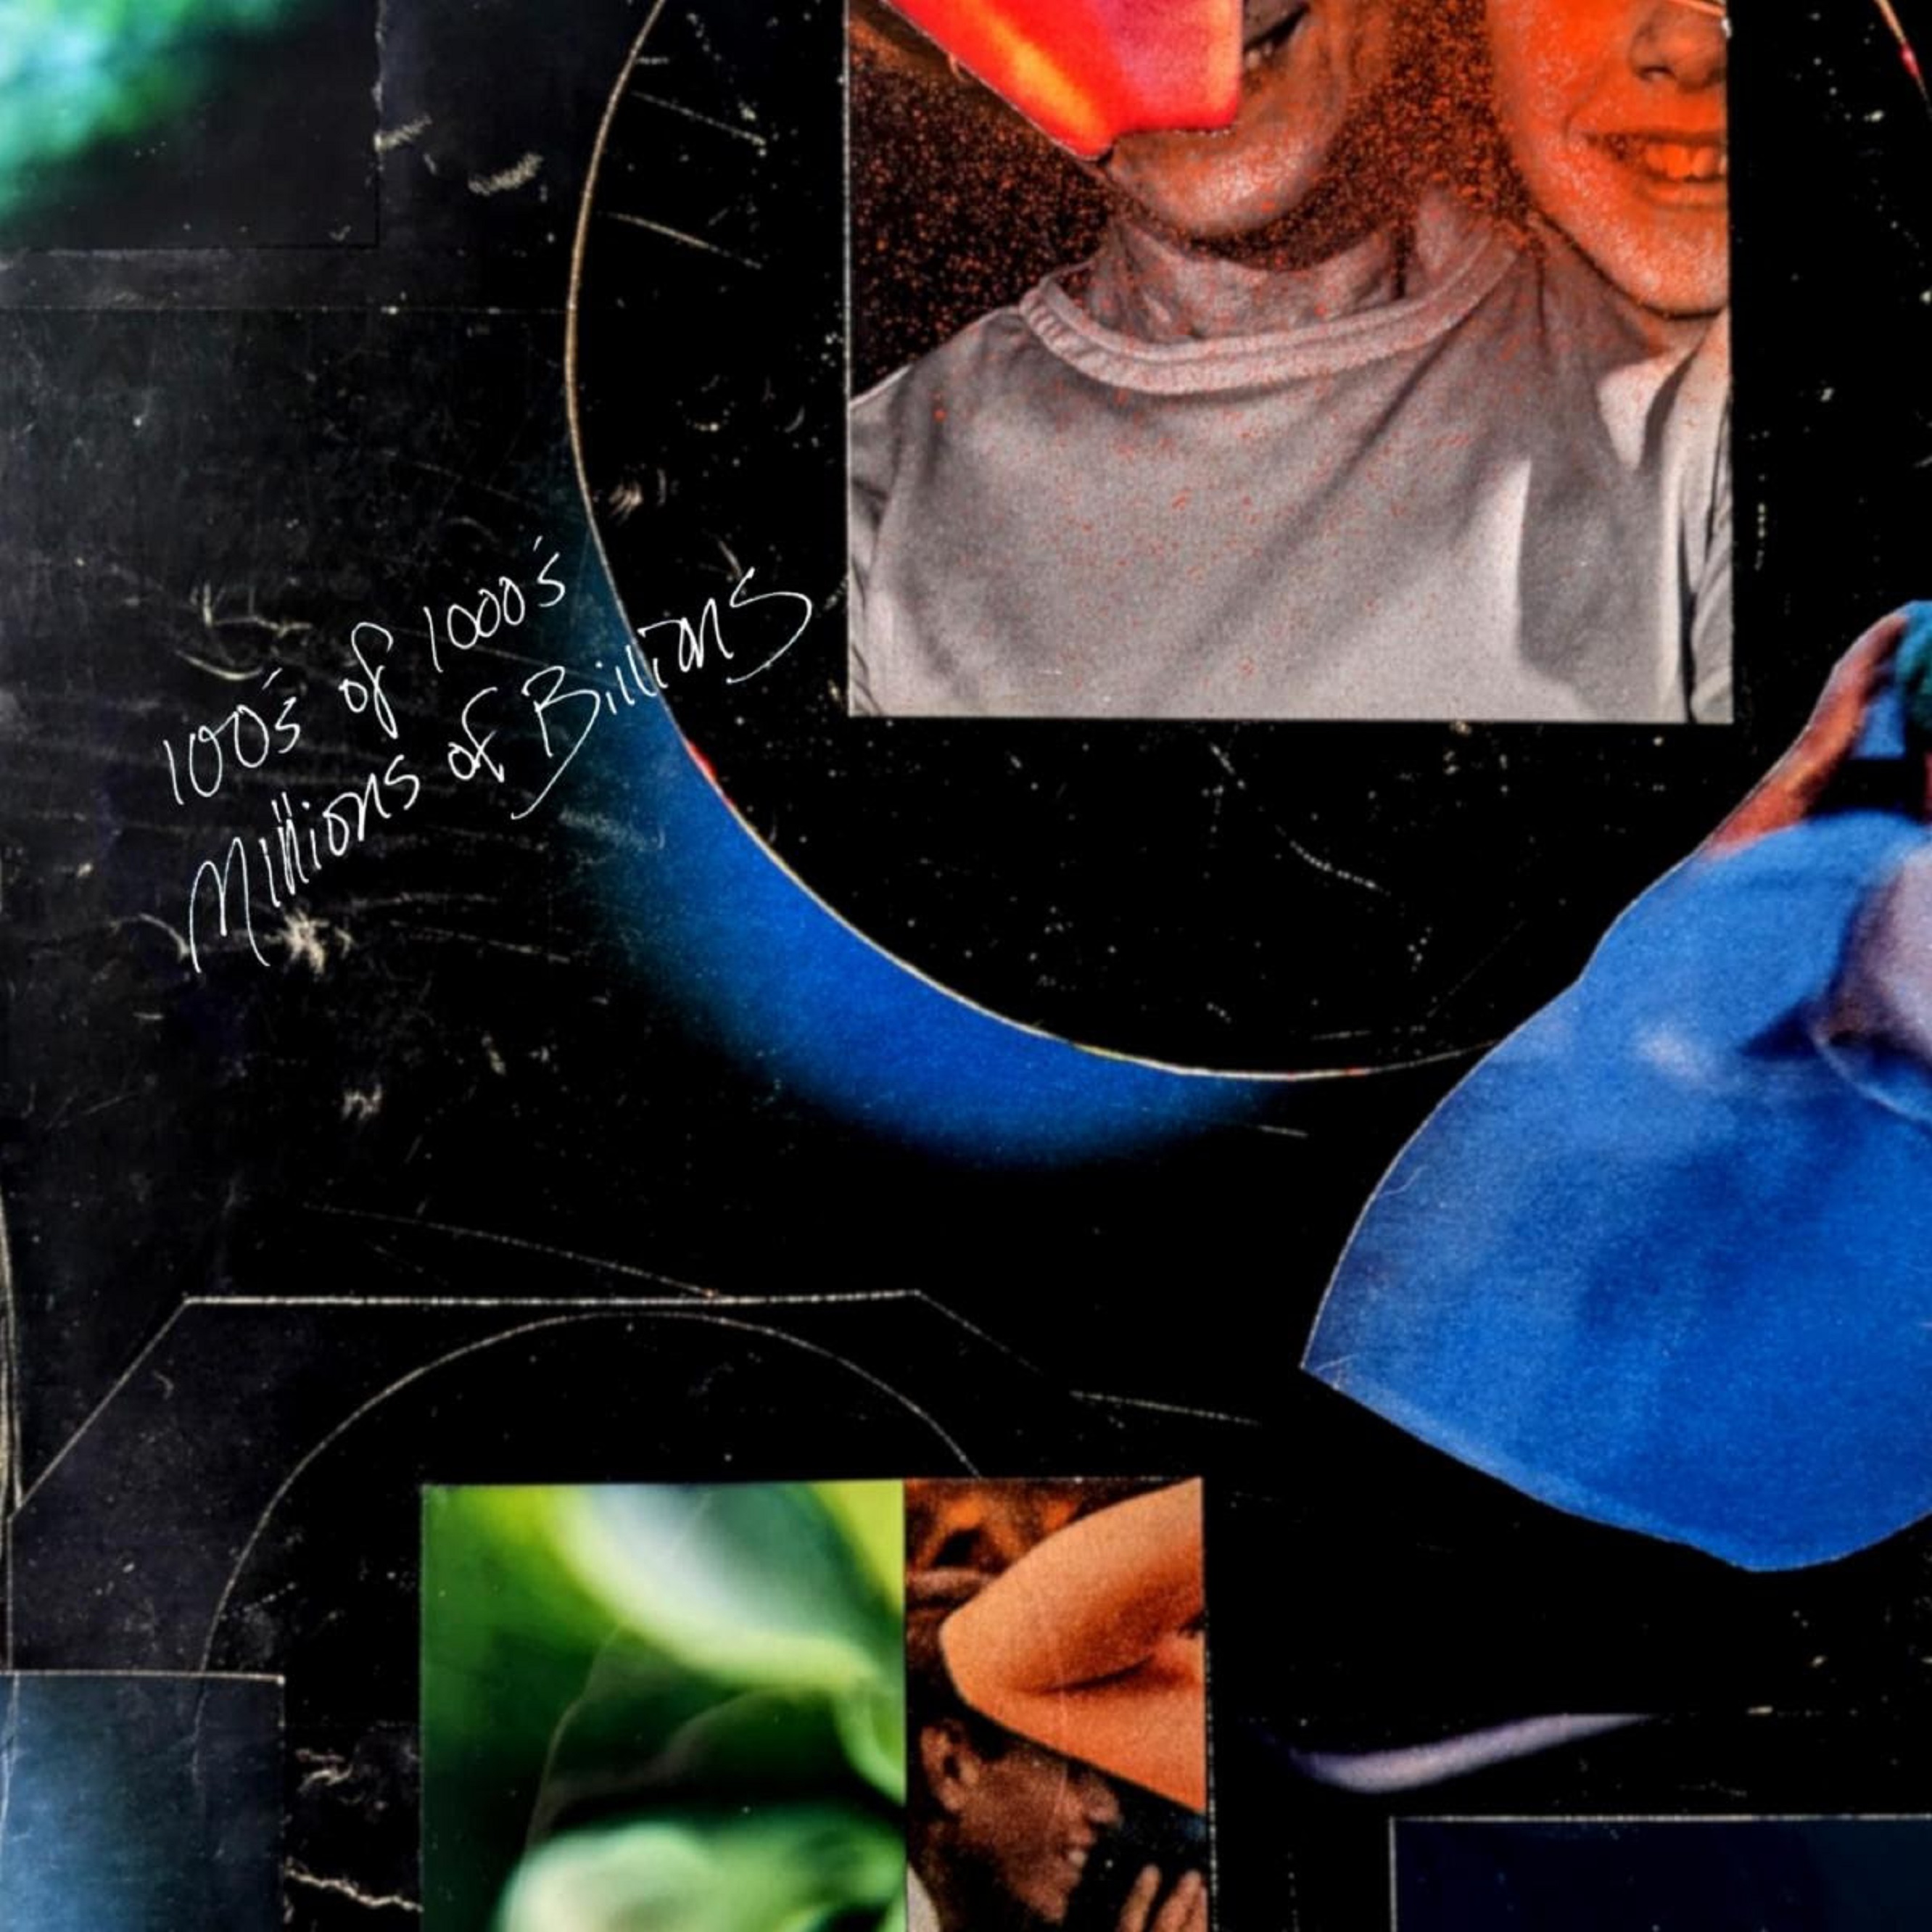 Blitzen Trapper Announces New LP '100’S of 1000’S, Millions of Billions' Out 5/17